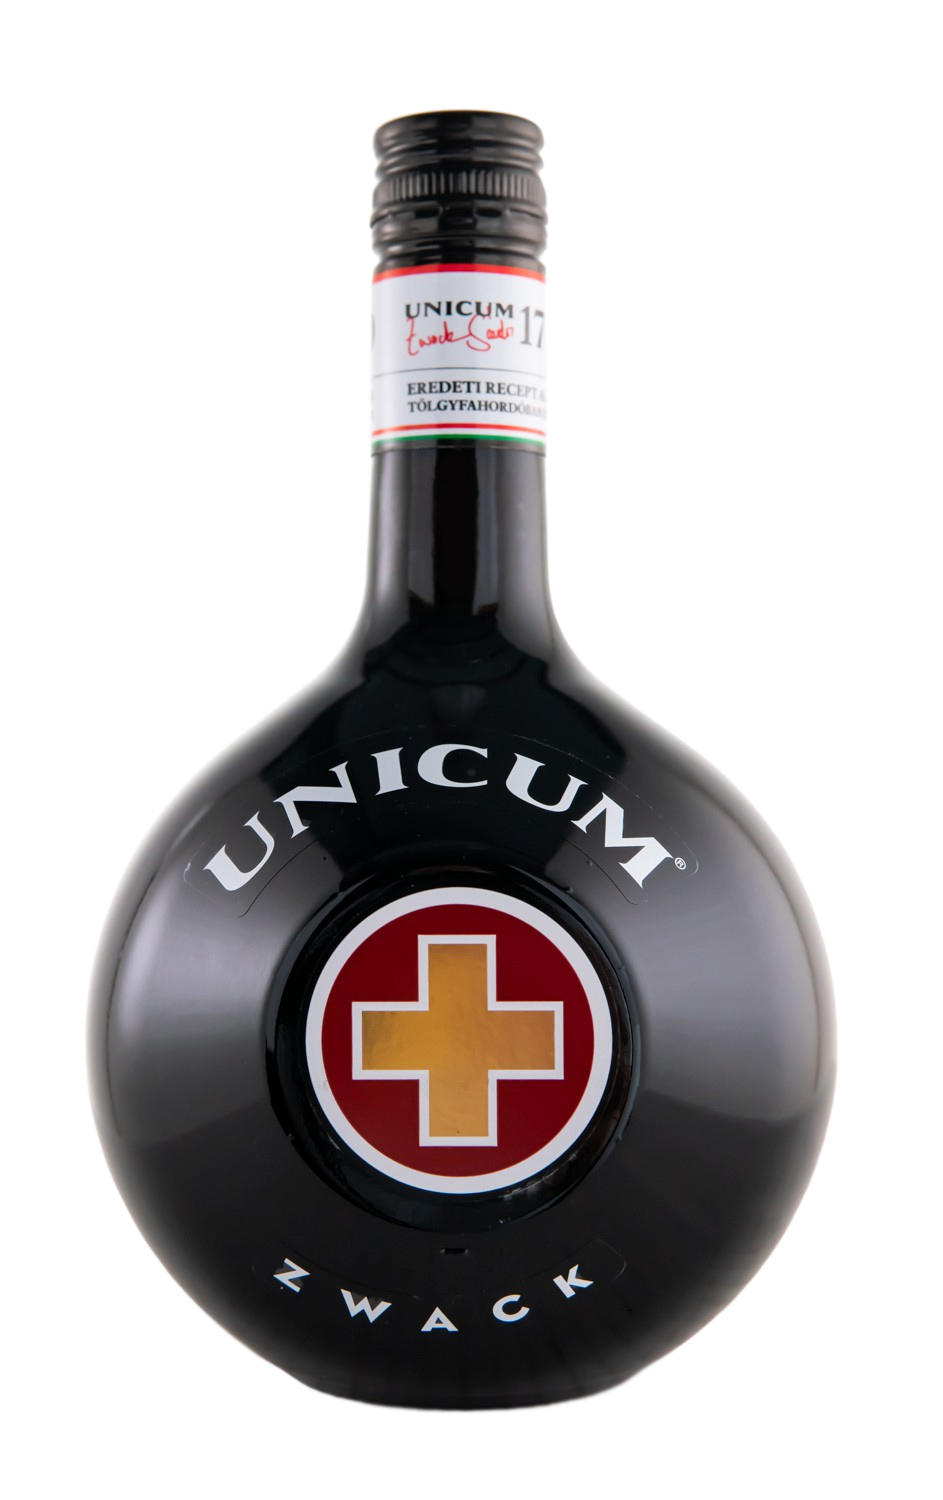 Unicum Zwack günstig Kräuterlikör kaufen (1L)